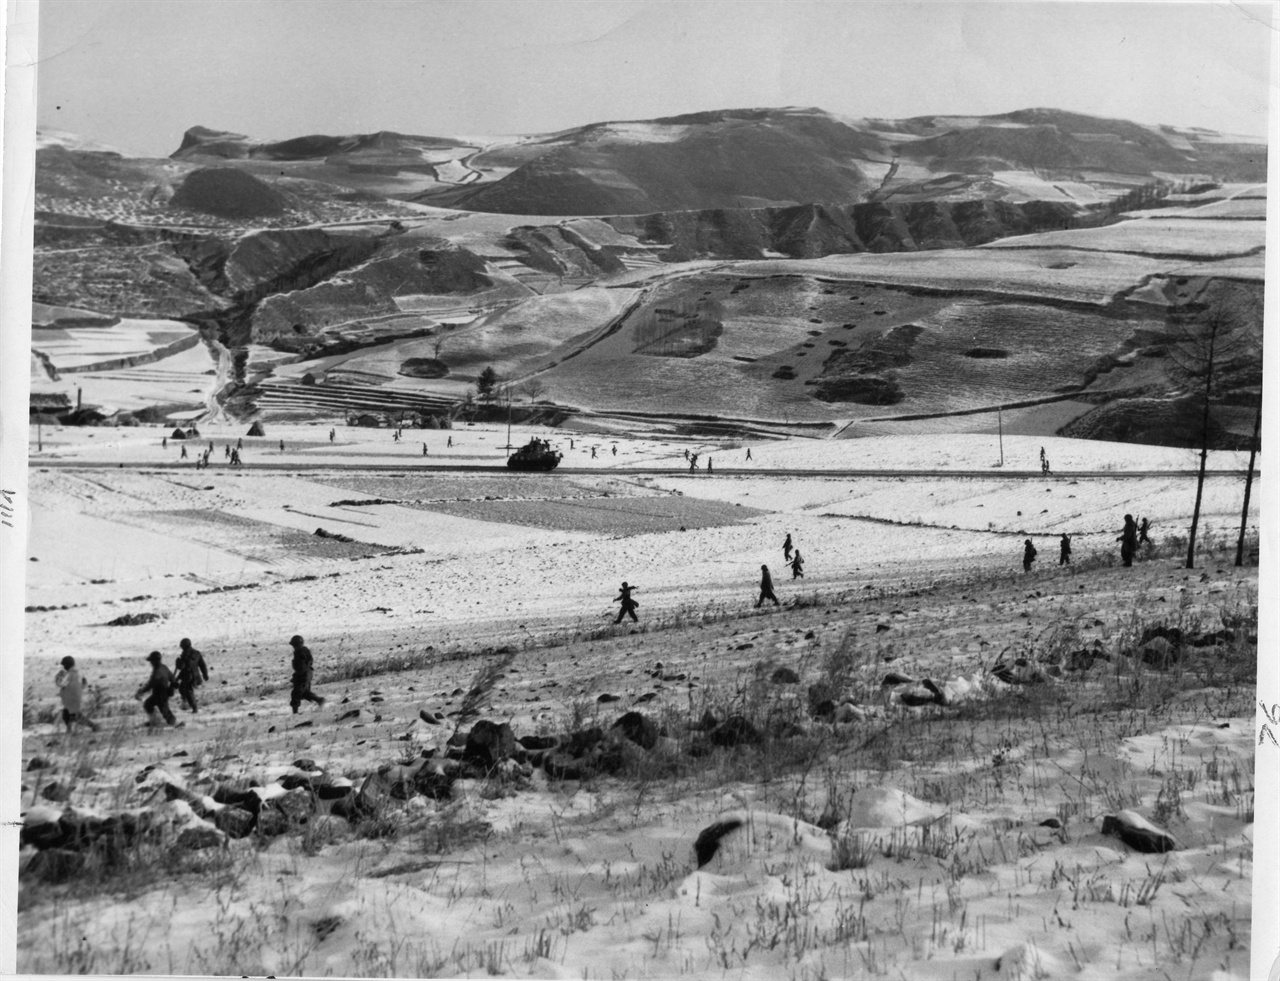  1950. 11. 21. 미 7사단 장병들이 국경지대인 압록강까지 진격하고 있다.